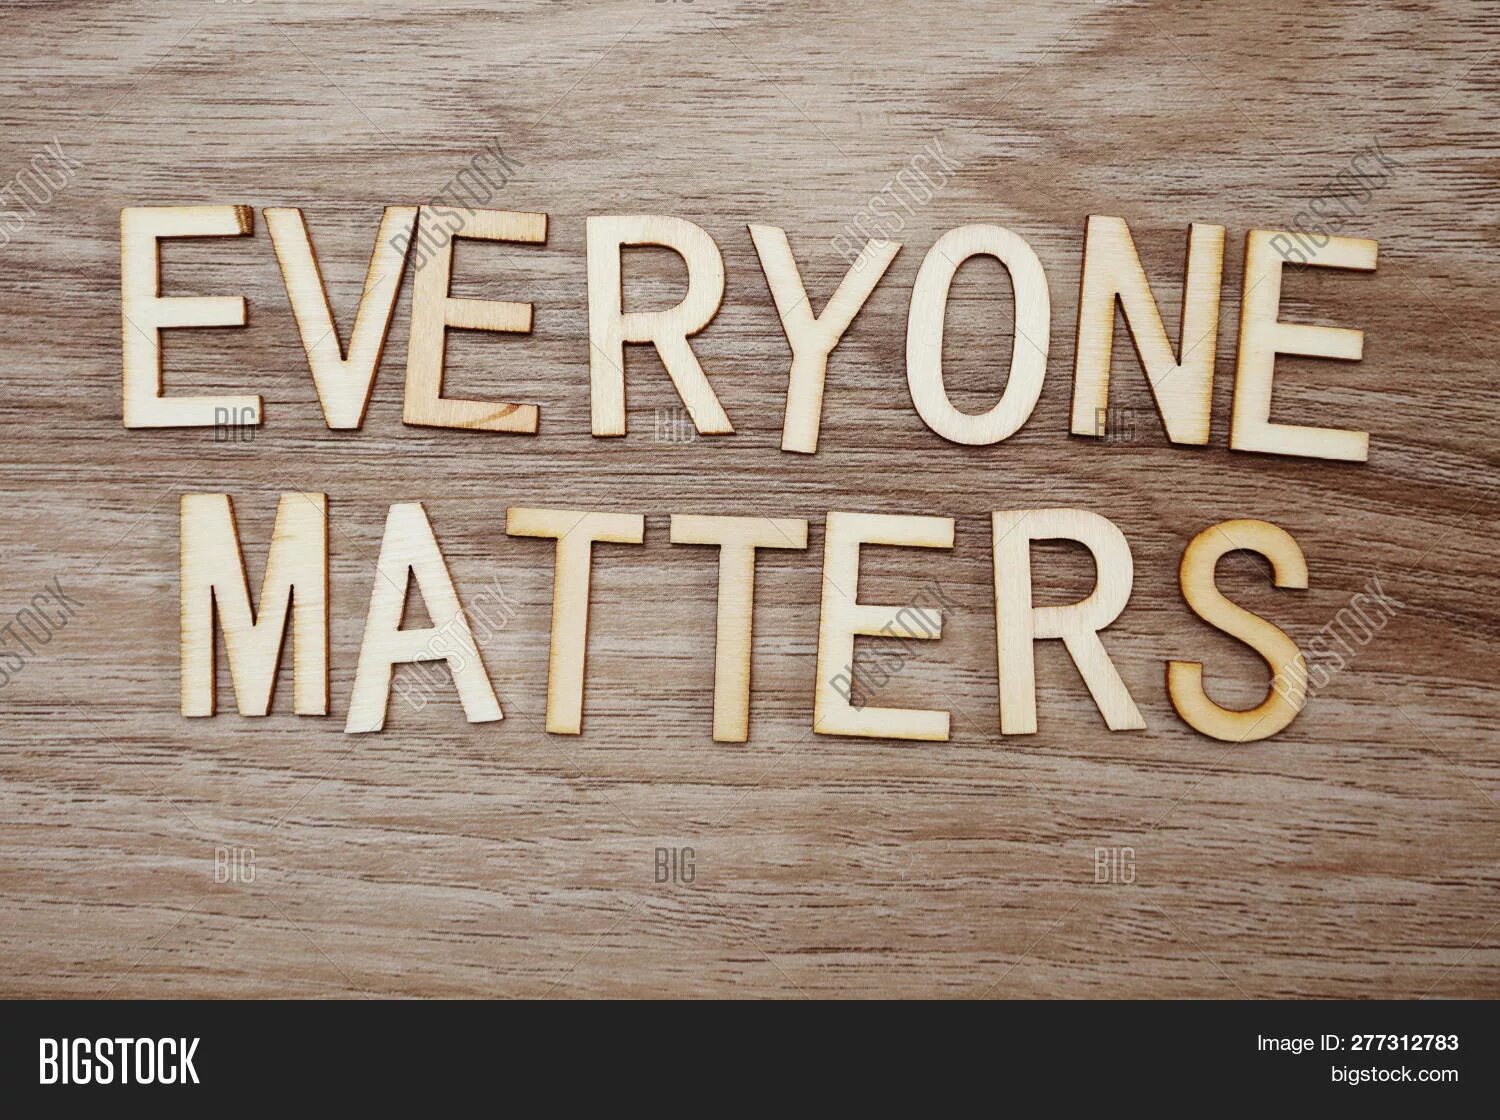 Everyone matters